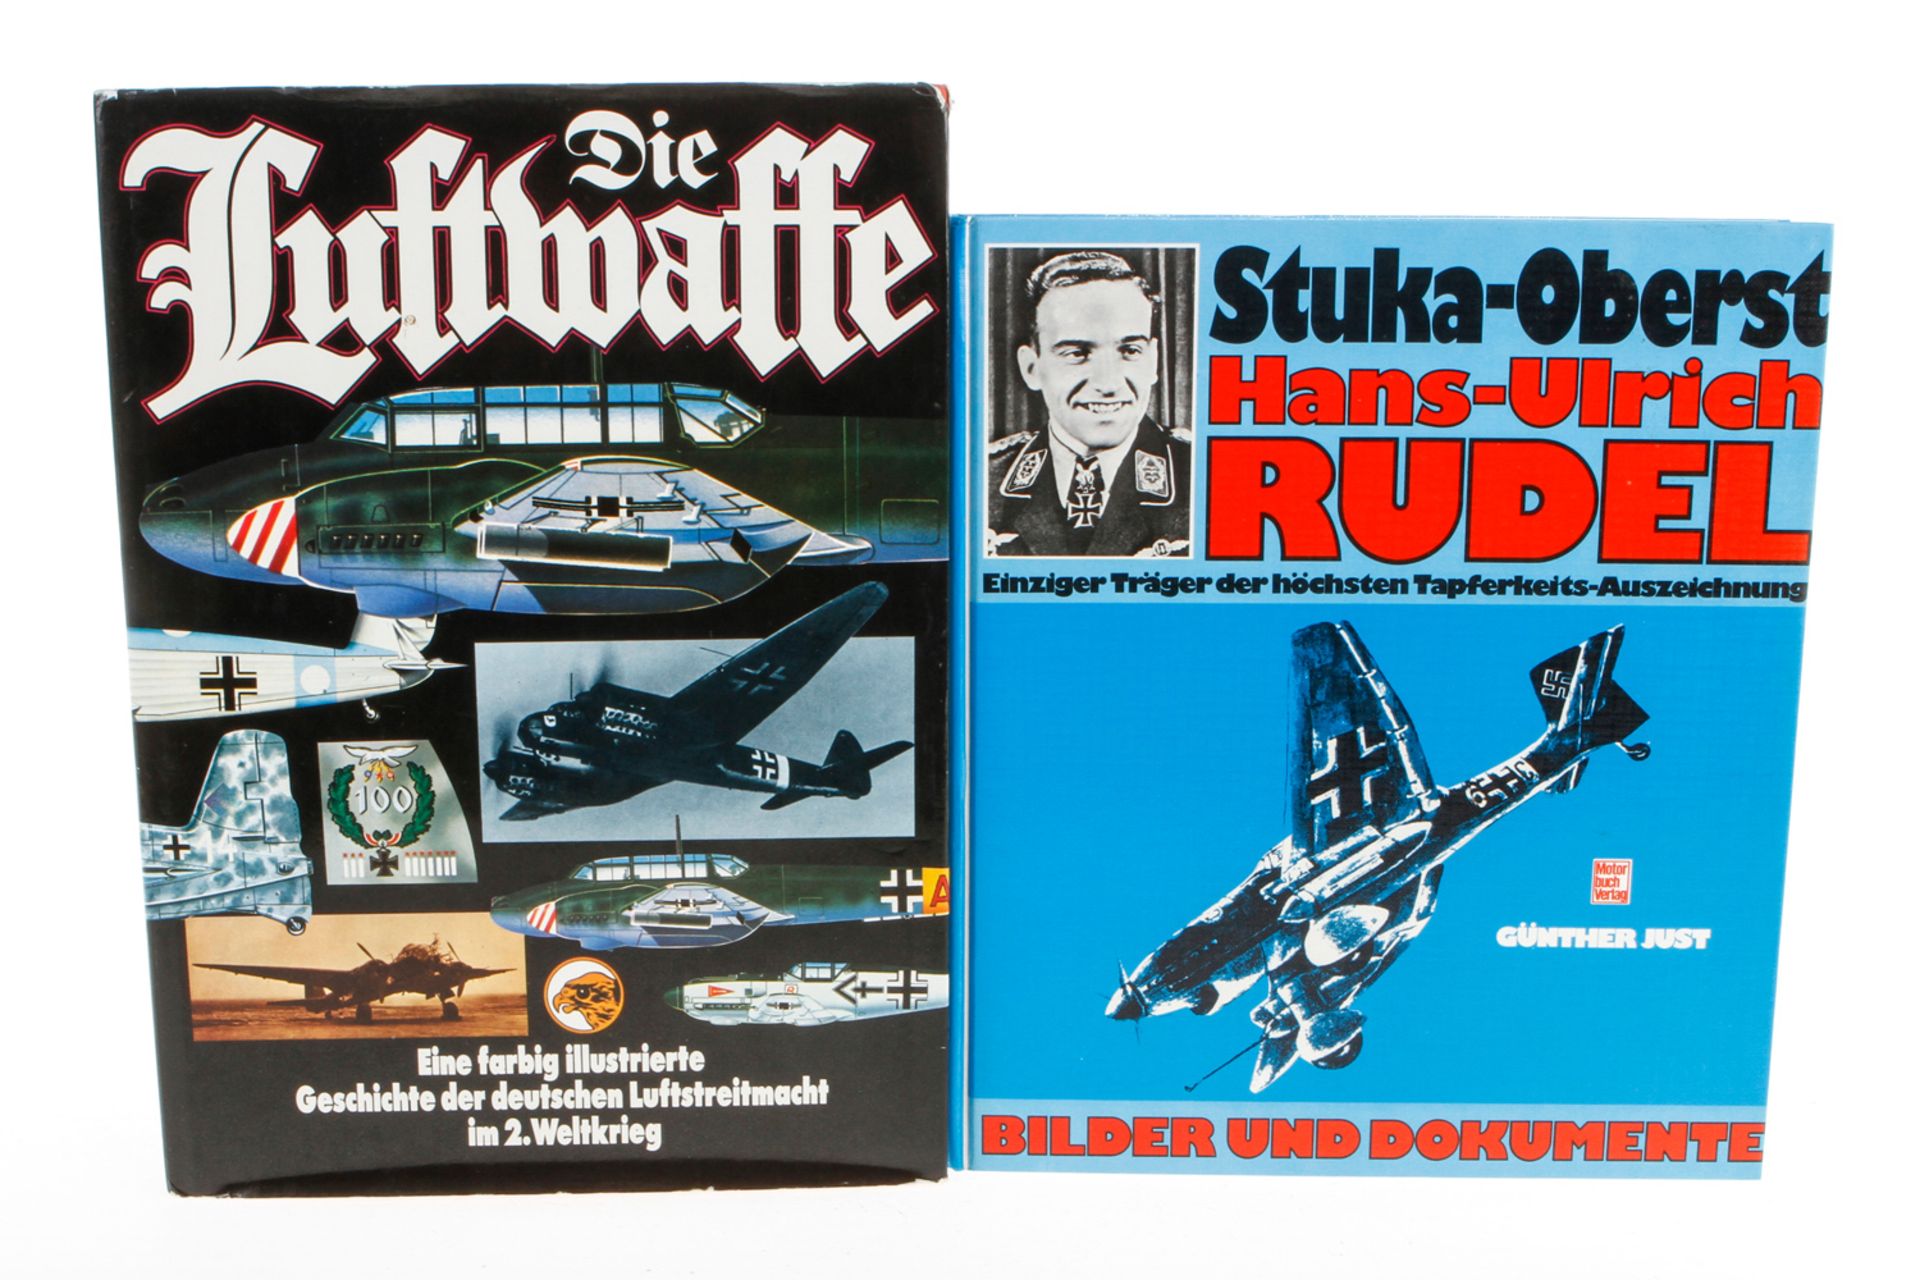 2 Bücher "Die Luftwaffe" und "Stuka-Oberst Hans-Ulrich Rudel", Alterungsspuren